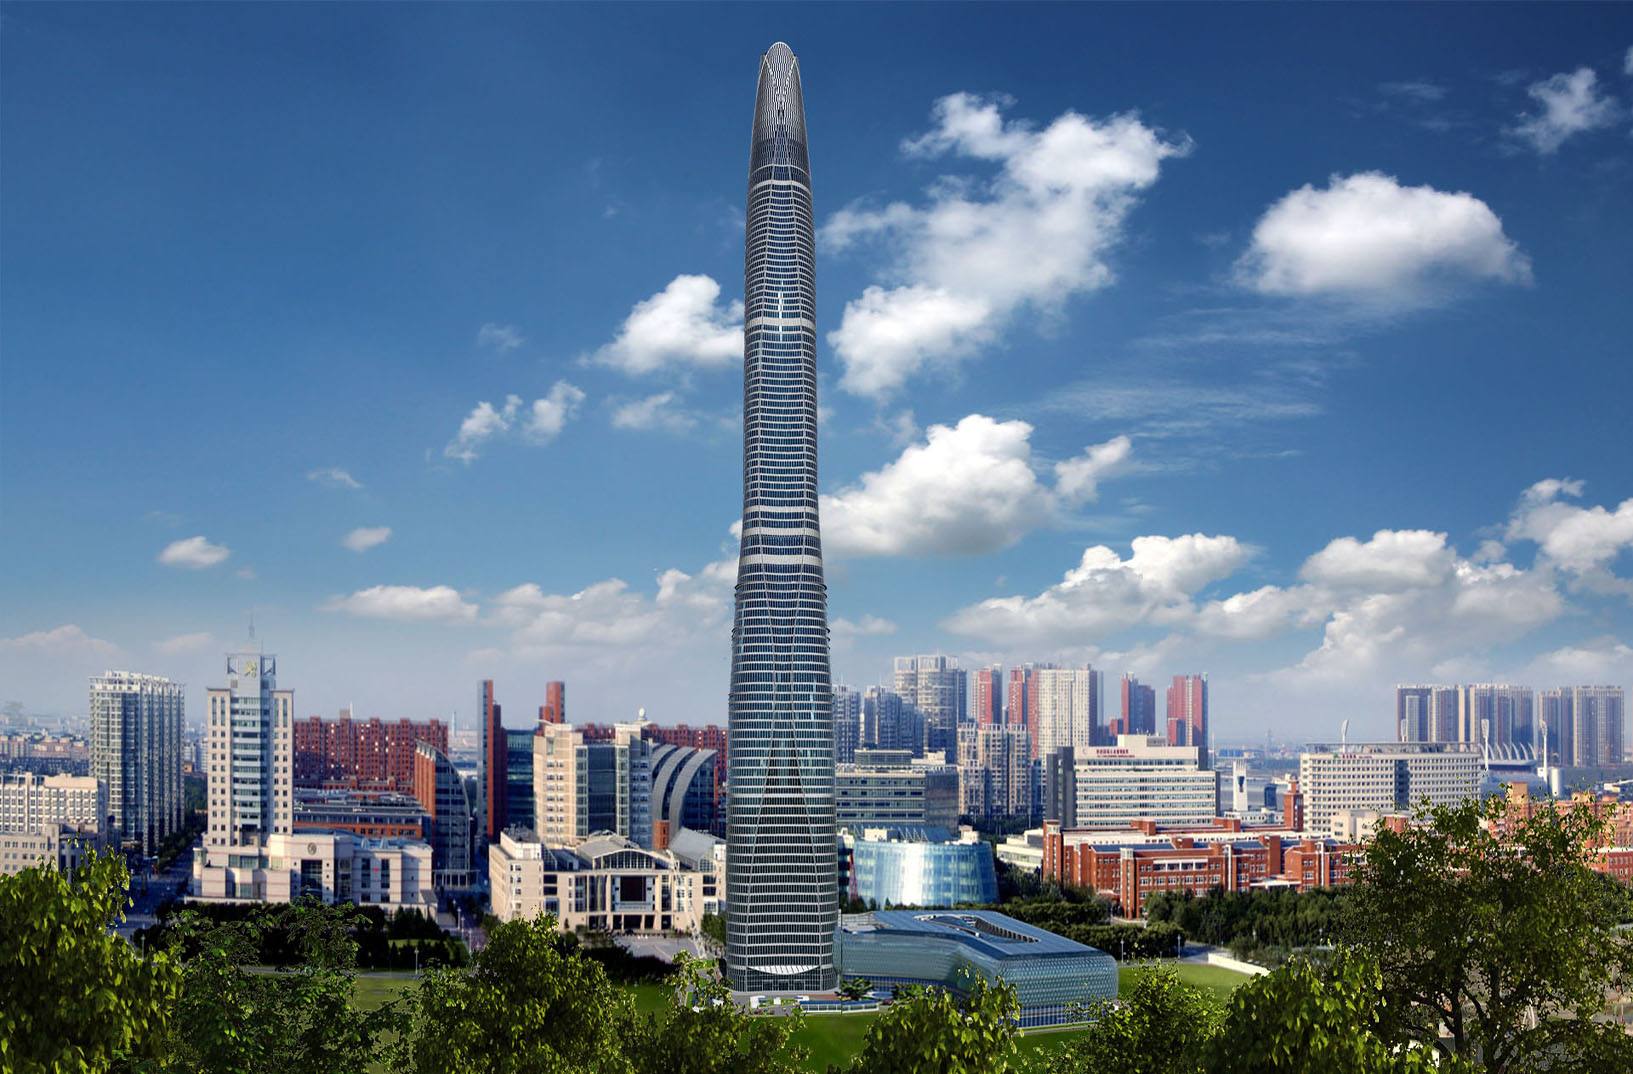 原创天津又一座新地标亮相,高530米,全球第八高楼,有北方之钻美誉